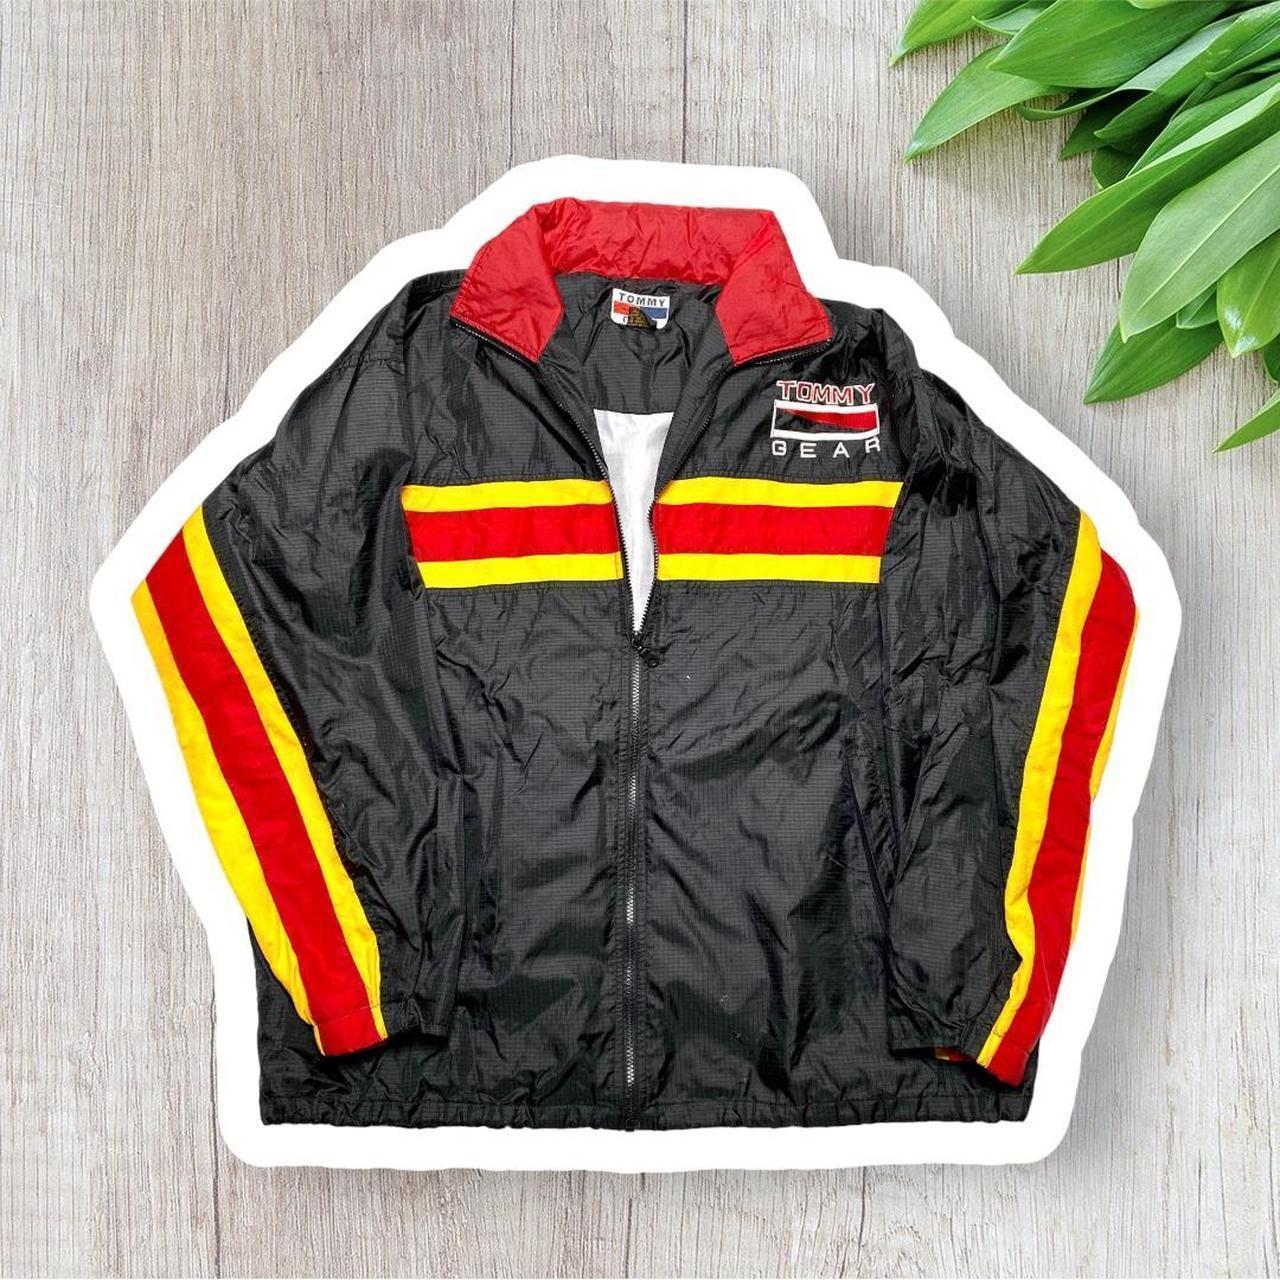 Manchuriet skulder Blandet Vintage 90's Tommy Hilfiger Jacket Mens size large!... - Depop